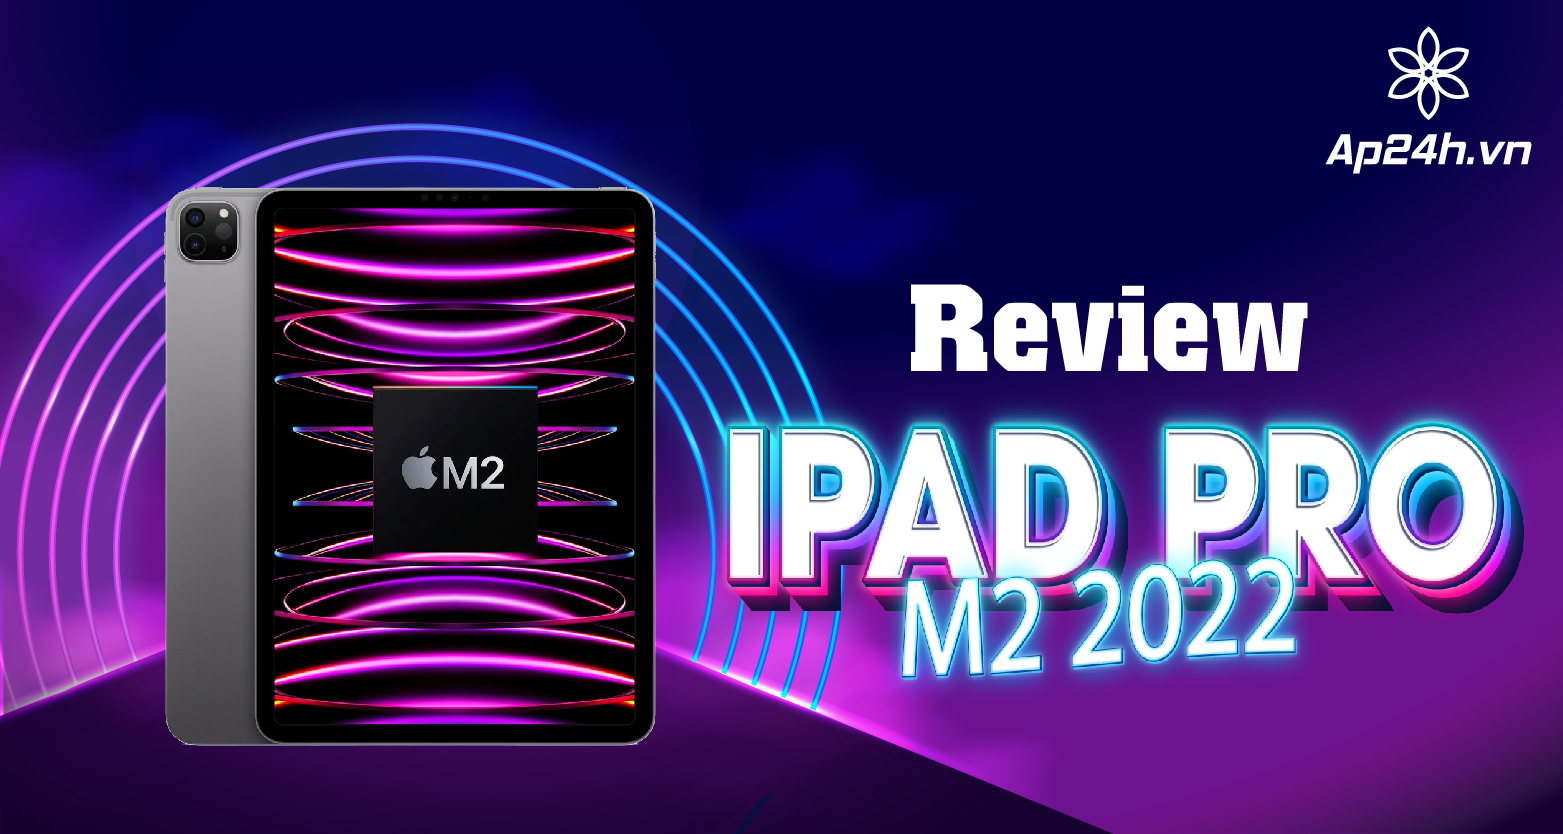  Đánh giá iPad Pro M2 2022